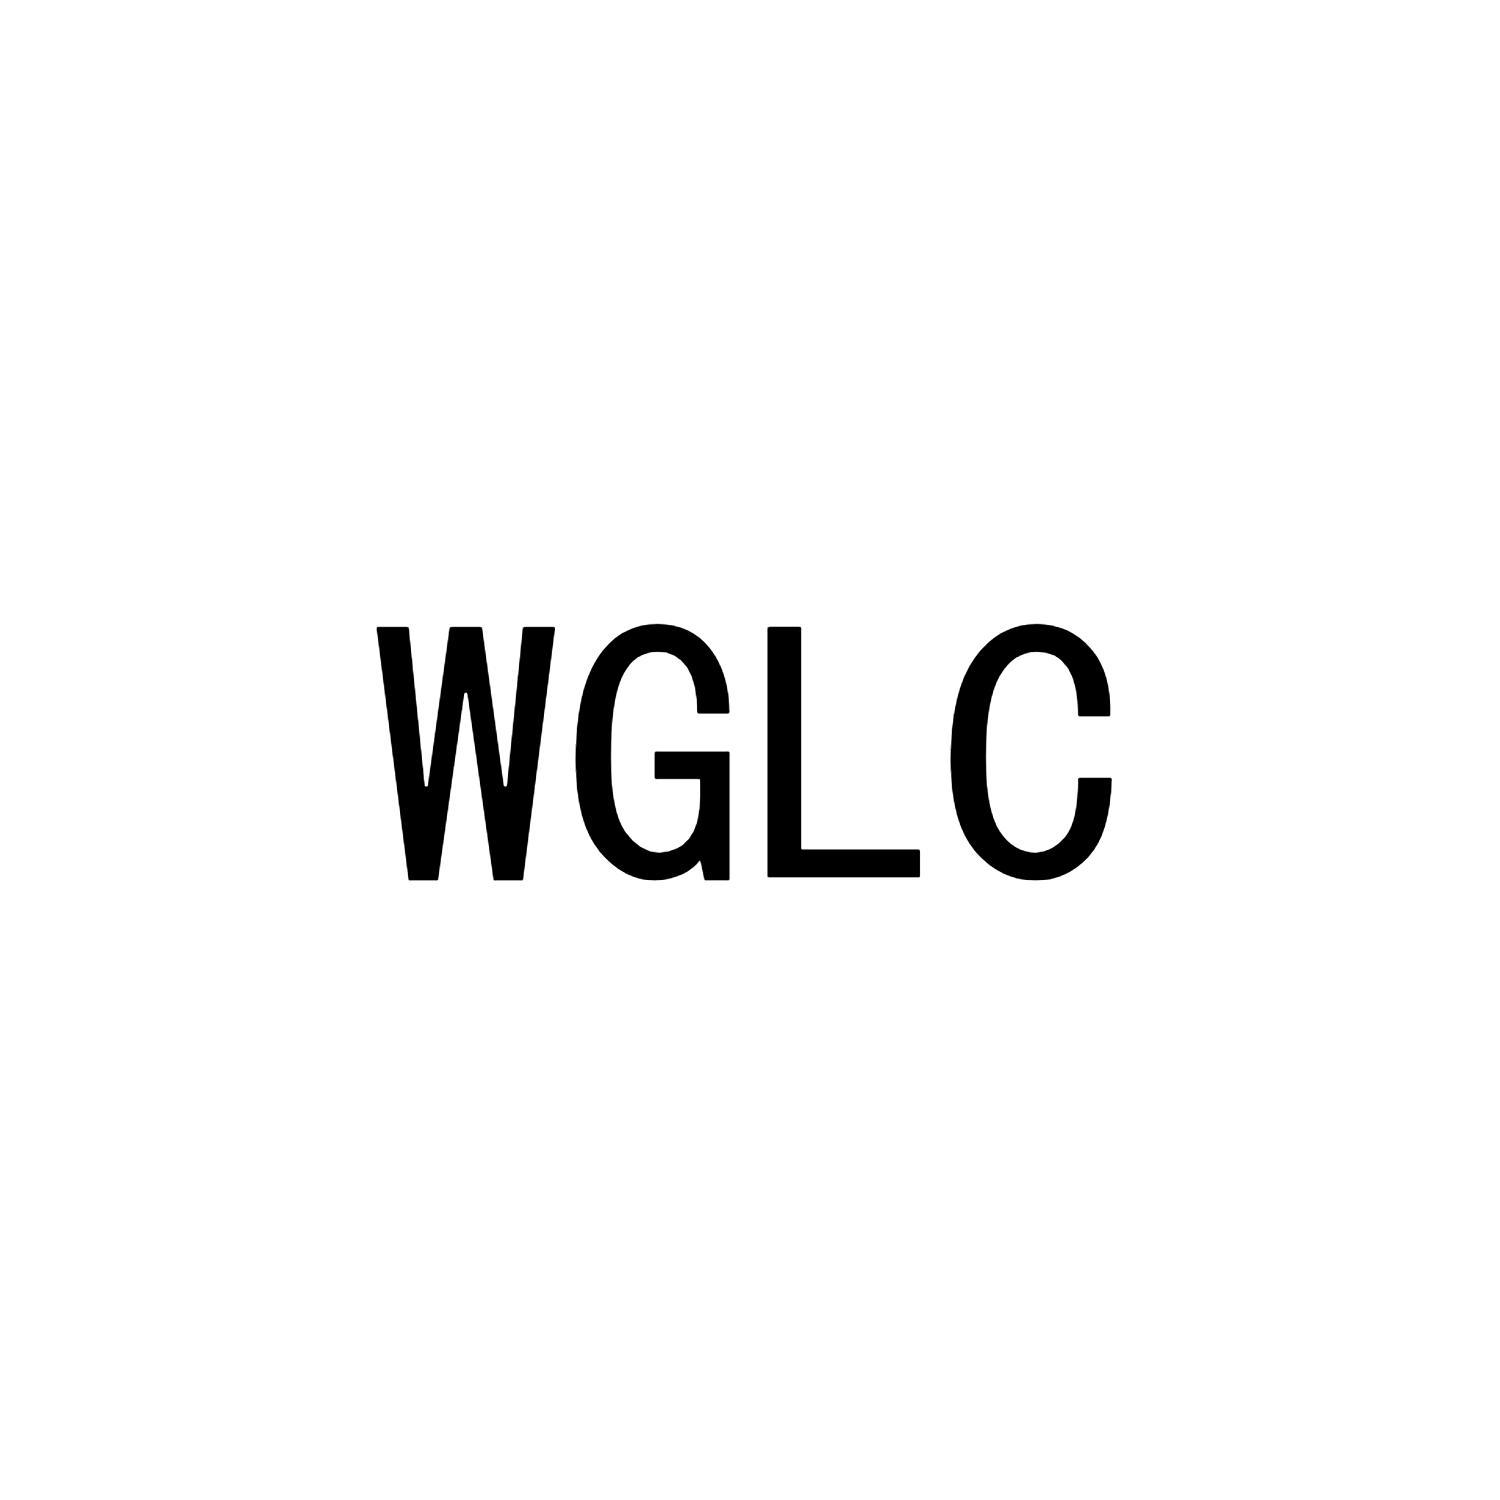 WGLC